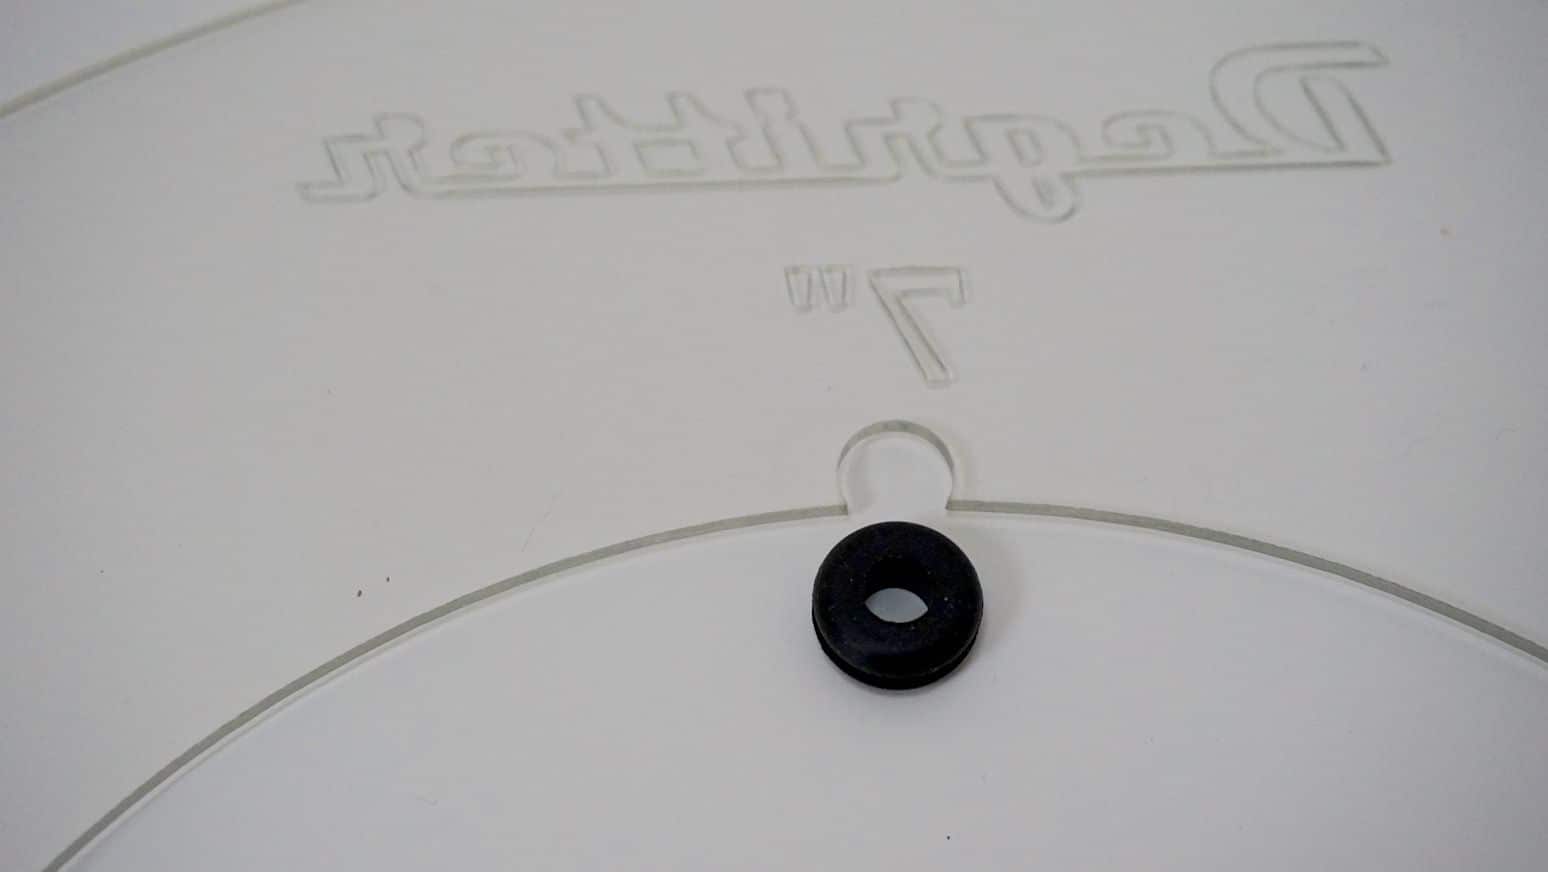 7" & 10" Adaptor Discs: Degritter Ultrasonic Cleaner